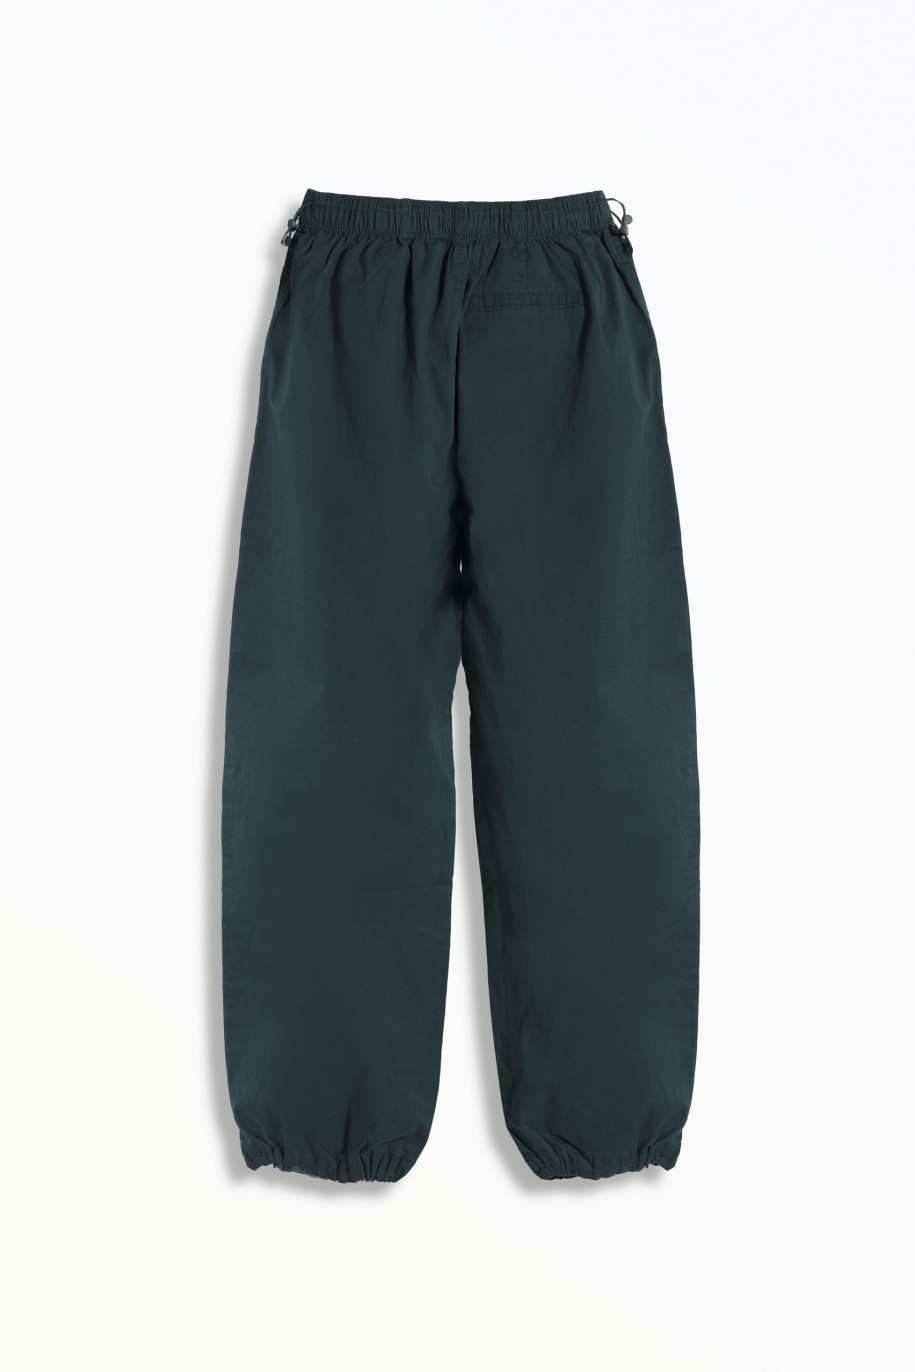 Zielone spodnie typu parachute z zaszewkami na nogawkach - 46309